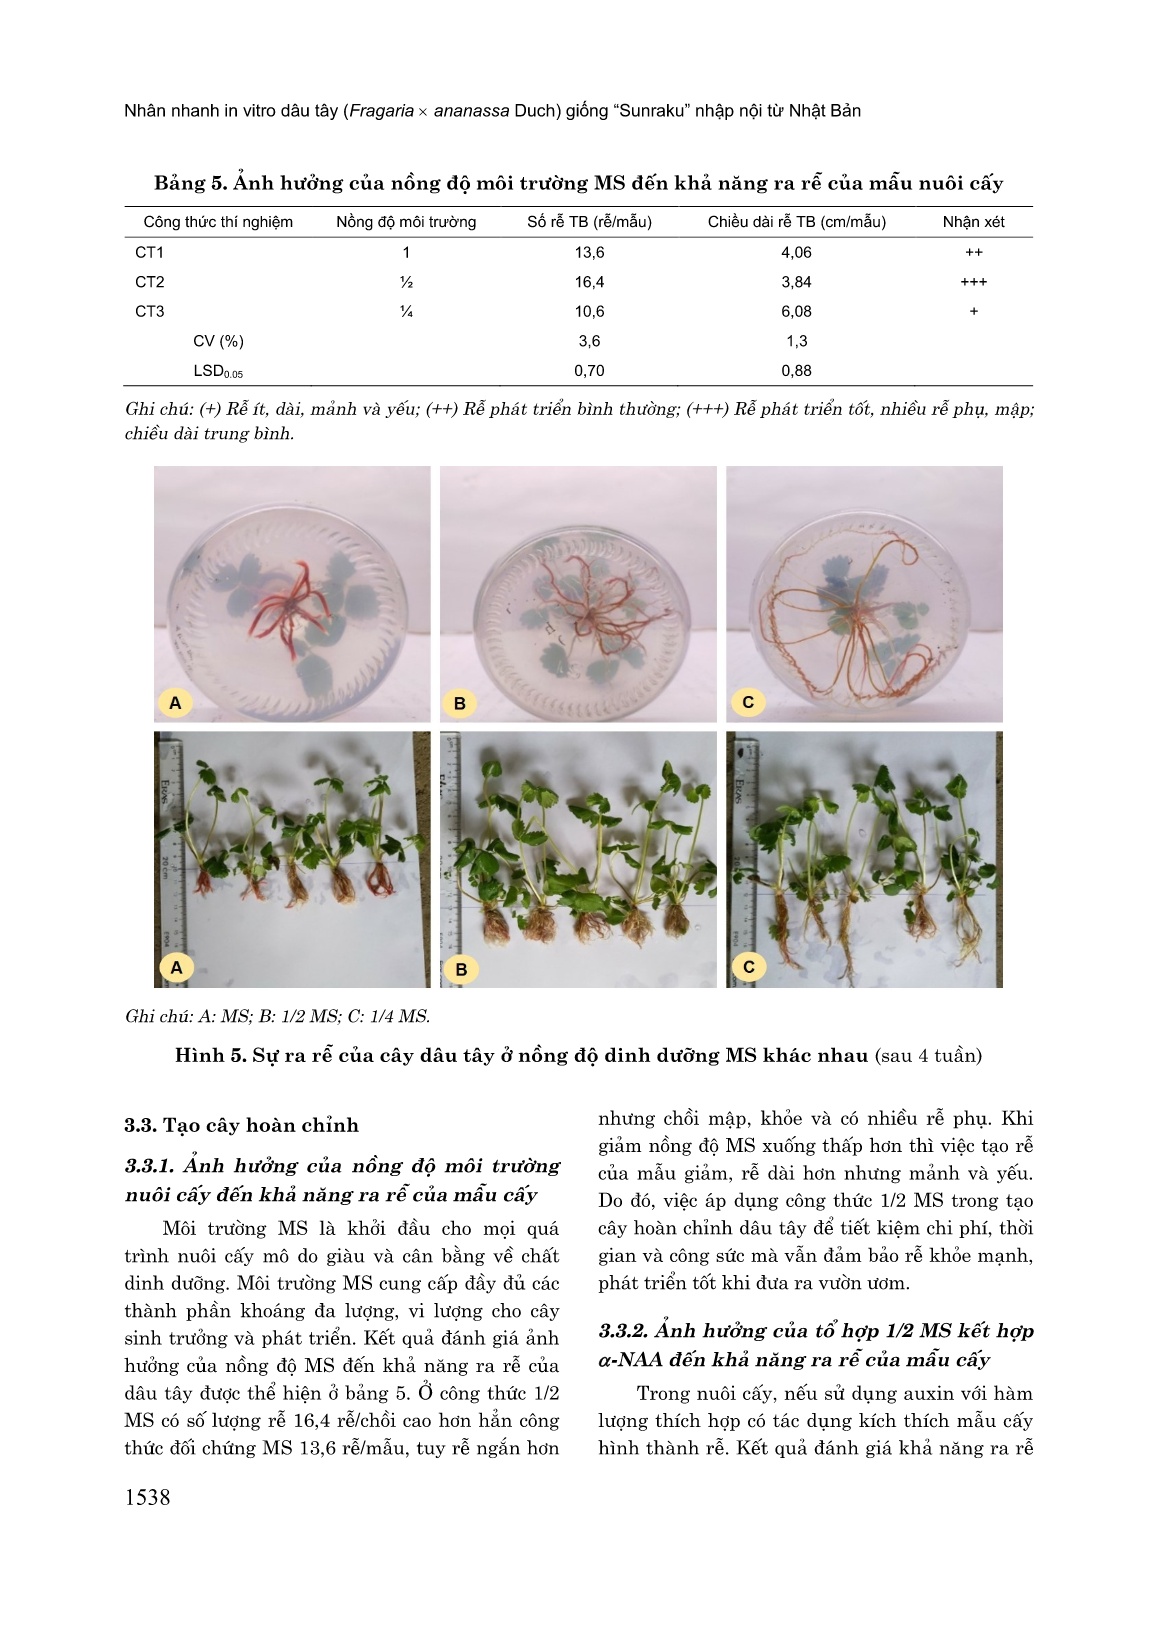 Nhân nhanh in vitro dâu tây (Fragaria x Ananassa Duch) giống “Sunraku” nhập nội từ Nhật Bản trang 8